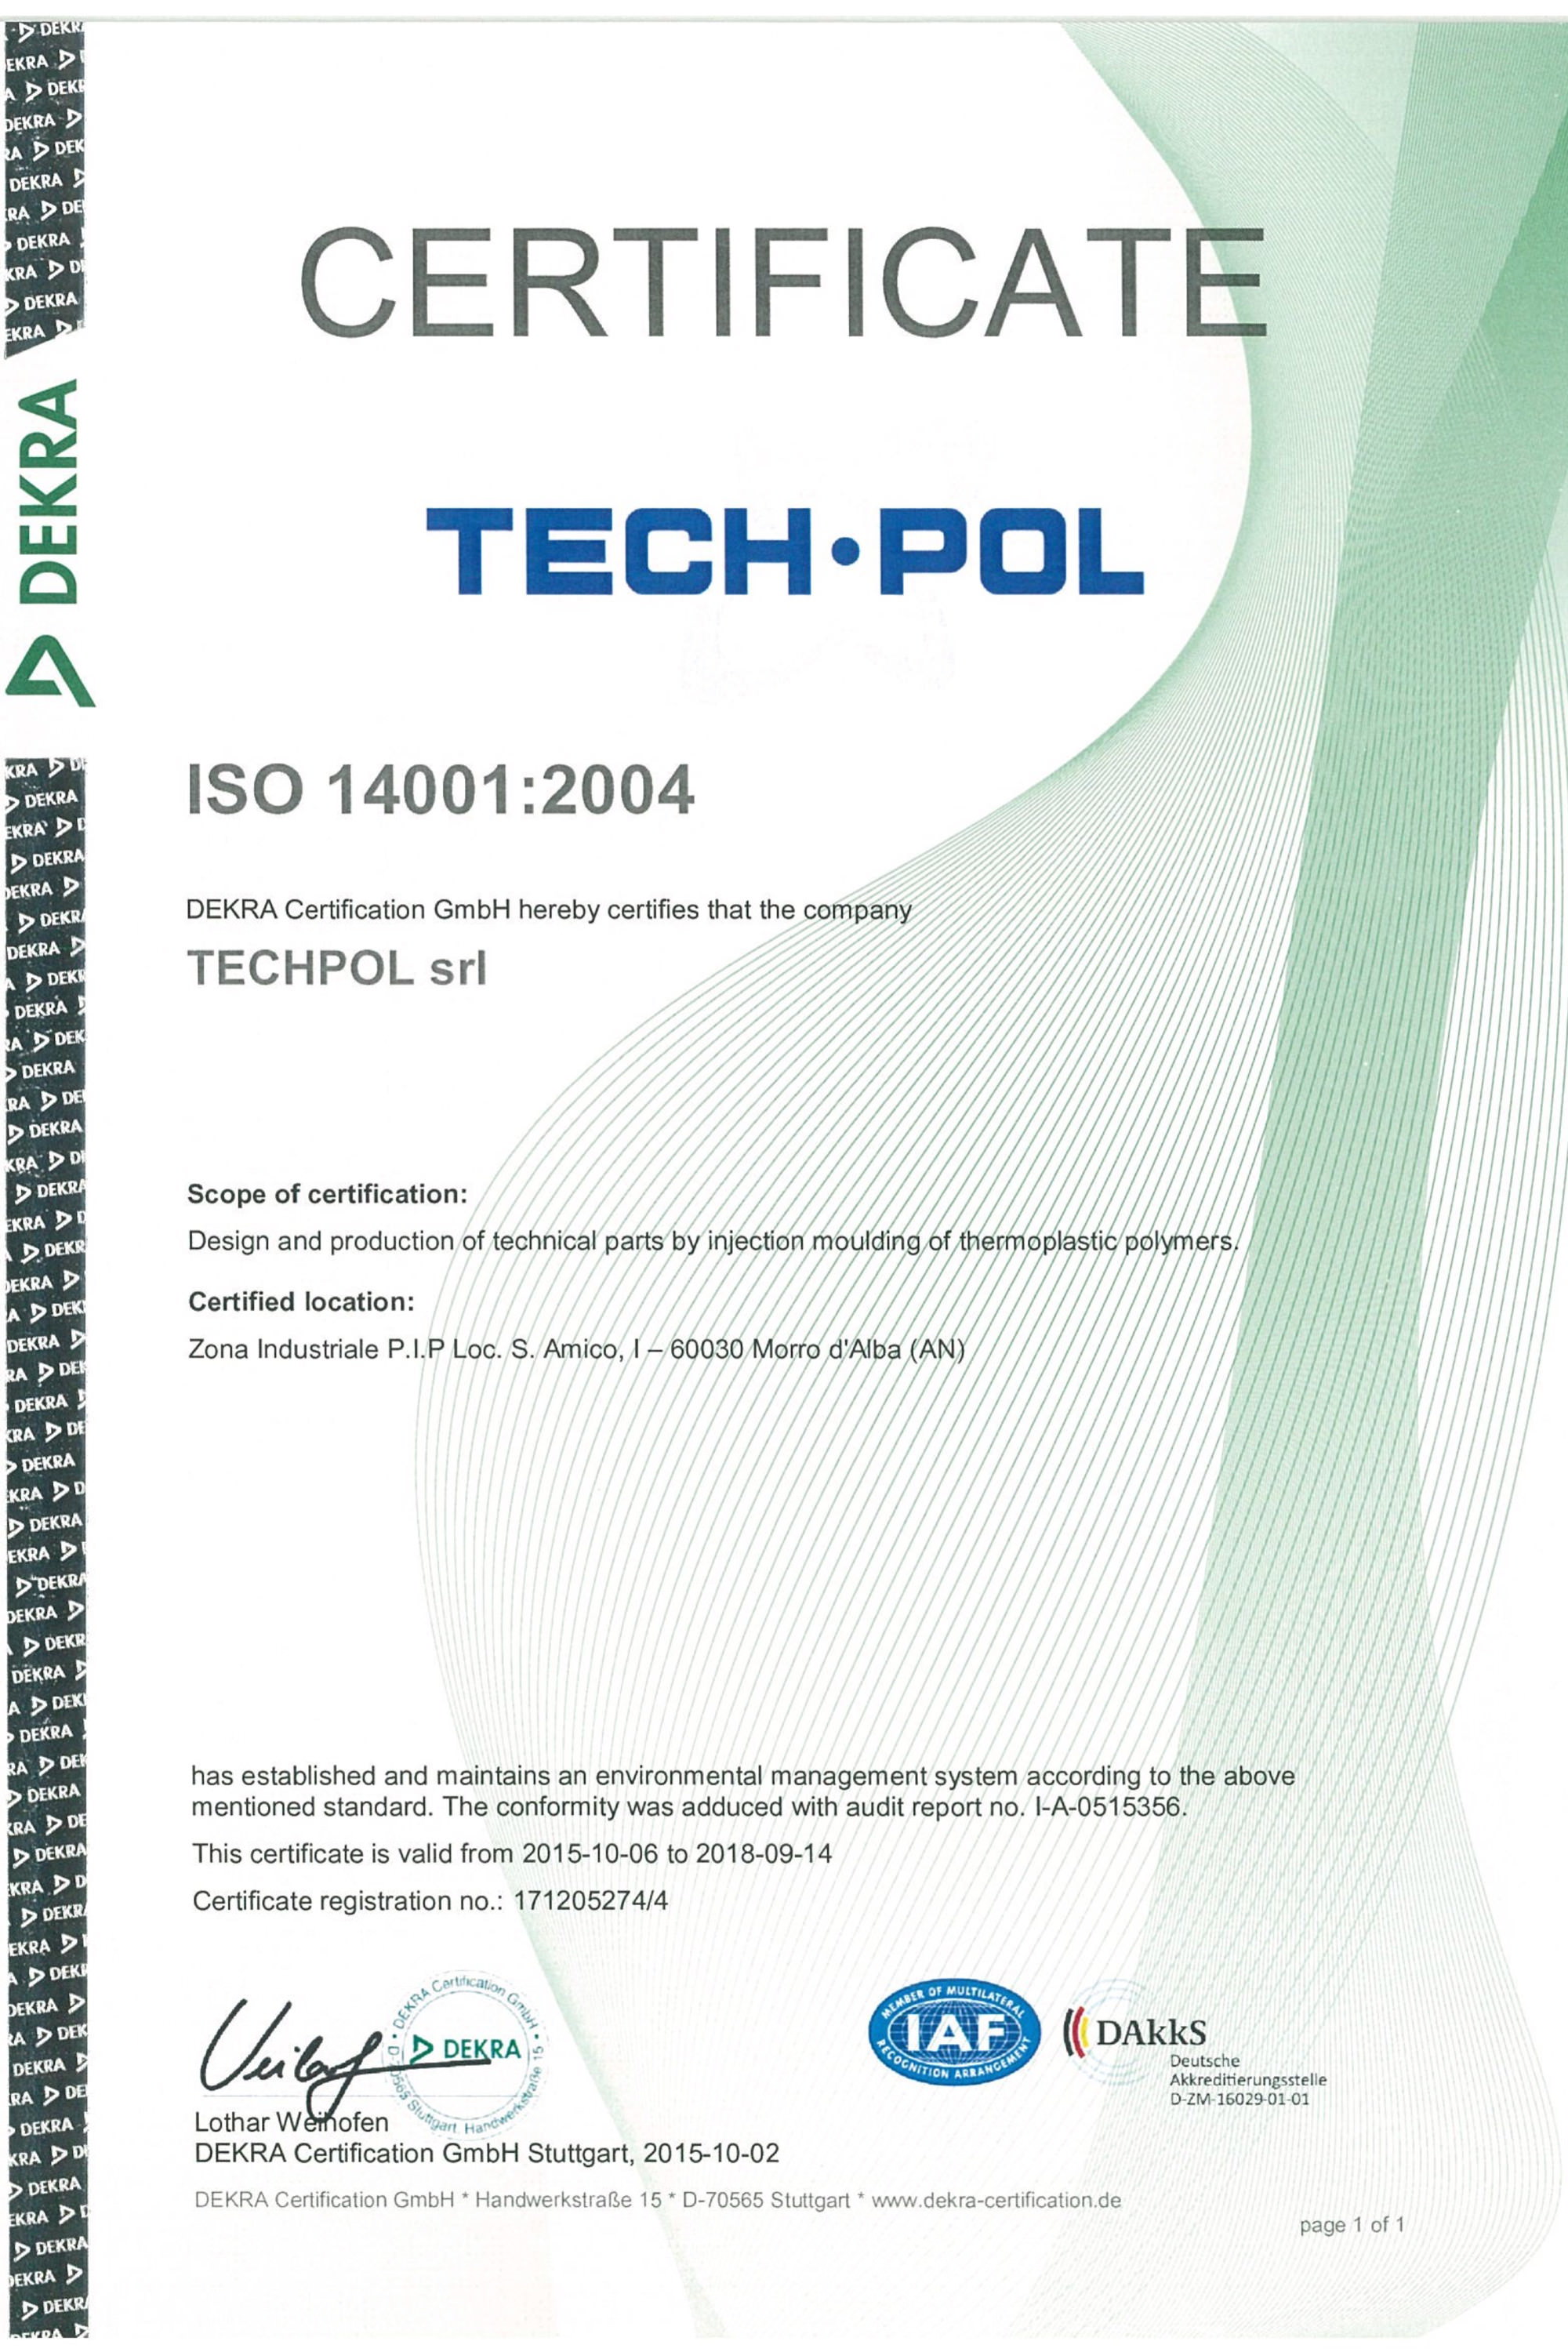 Certificazione ISO 14001 DEKRA